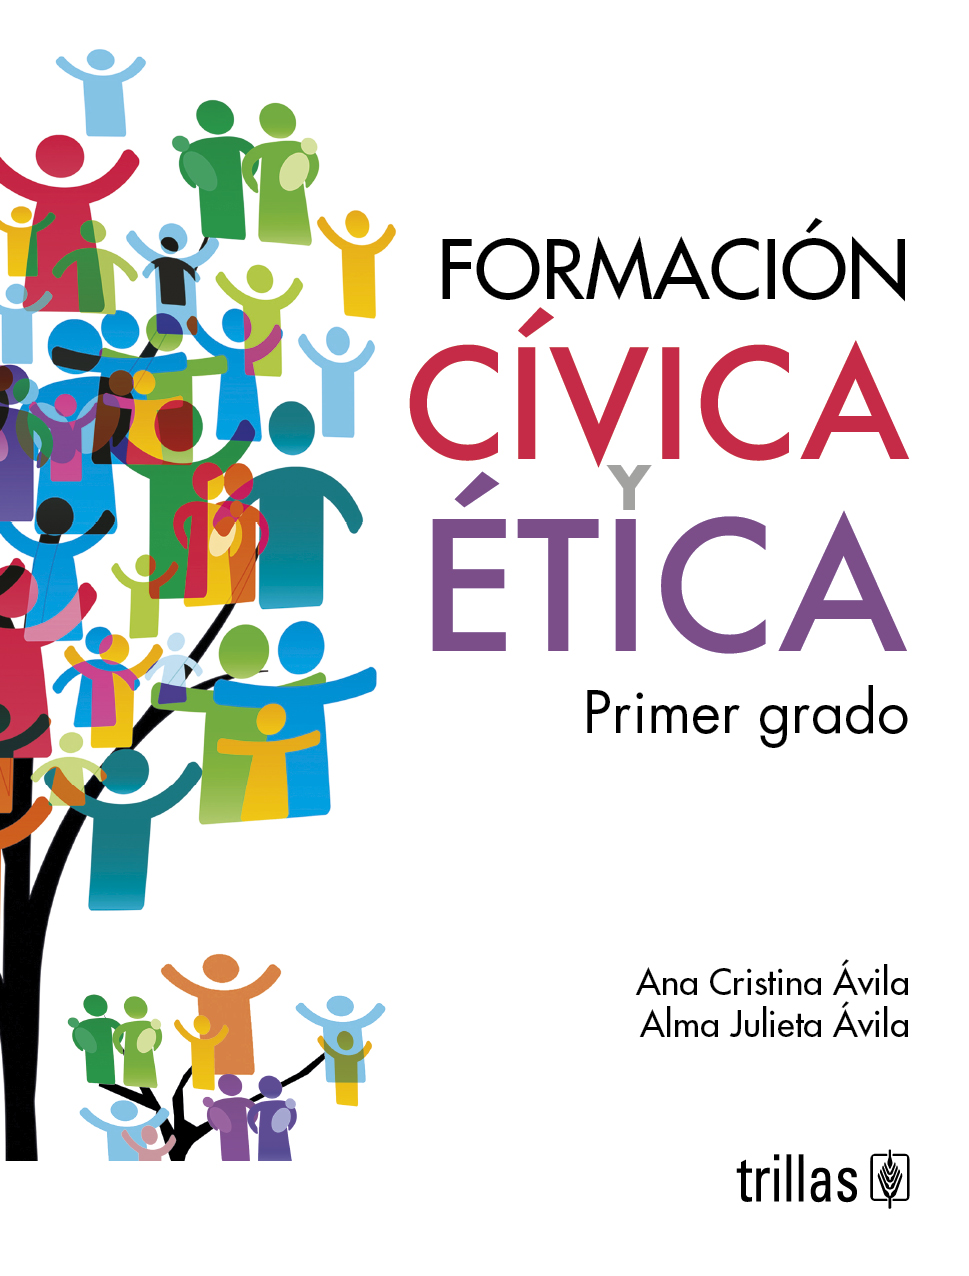 Imágenes De Formación Civica Y Etica Para Portada